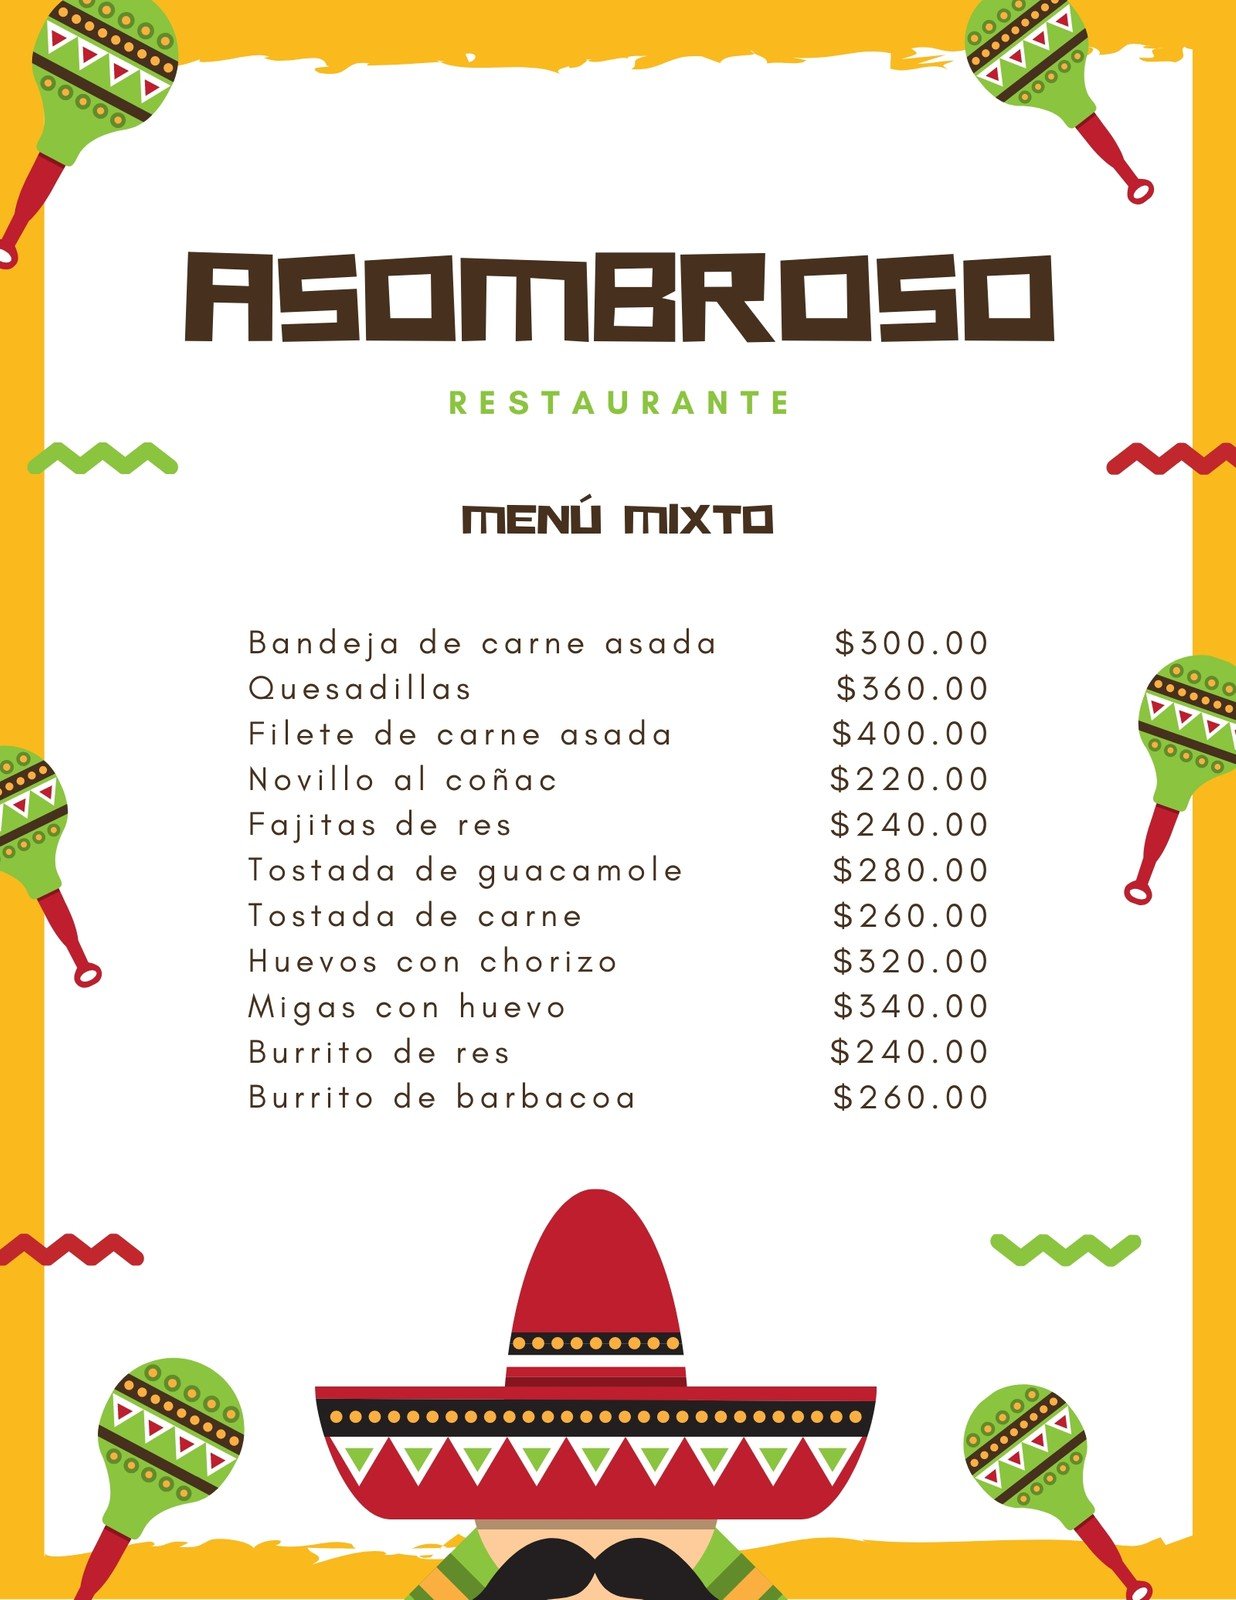 Plantillas para menús mexicanos personalizables | Canva